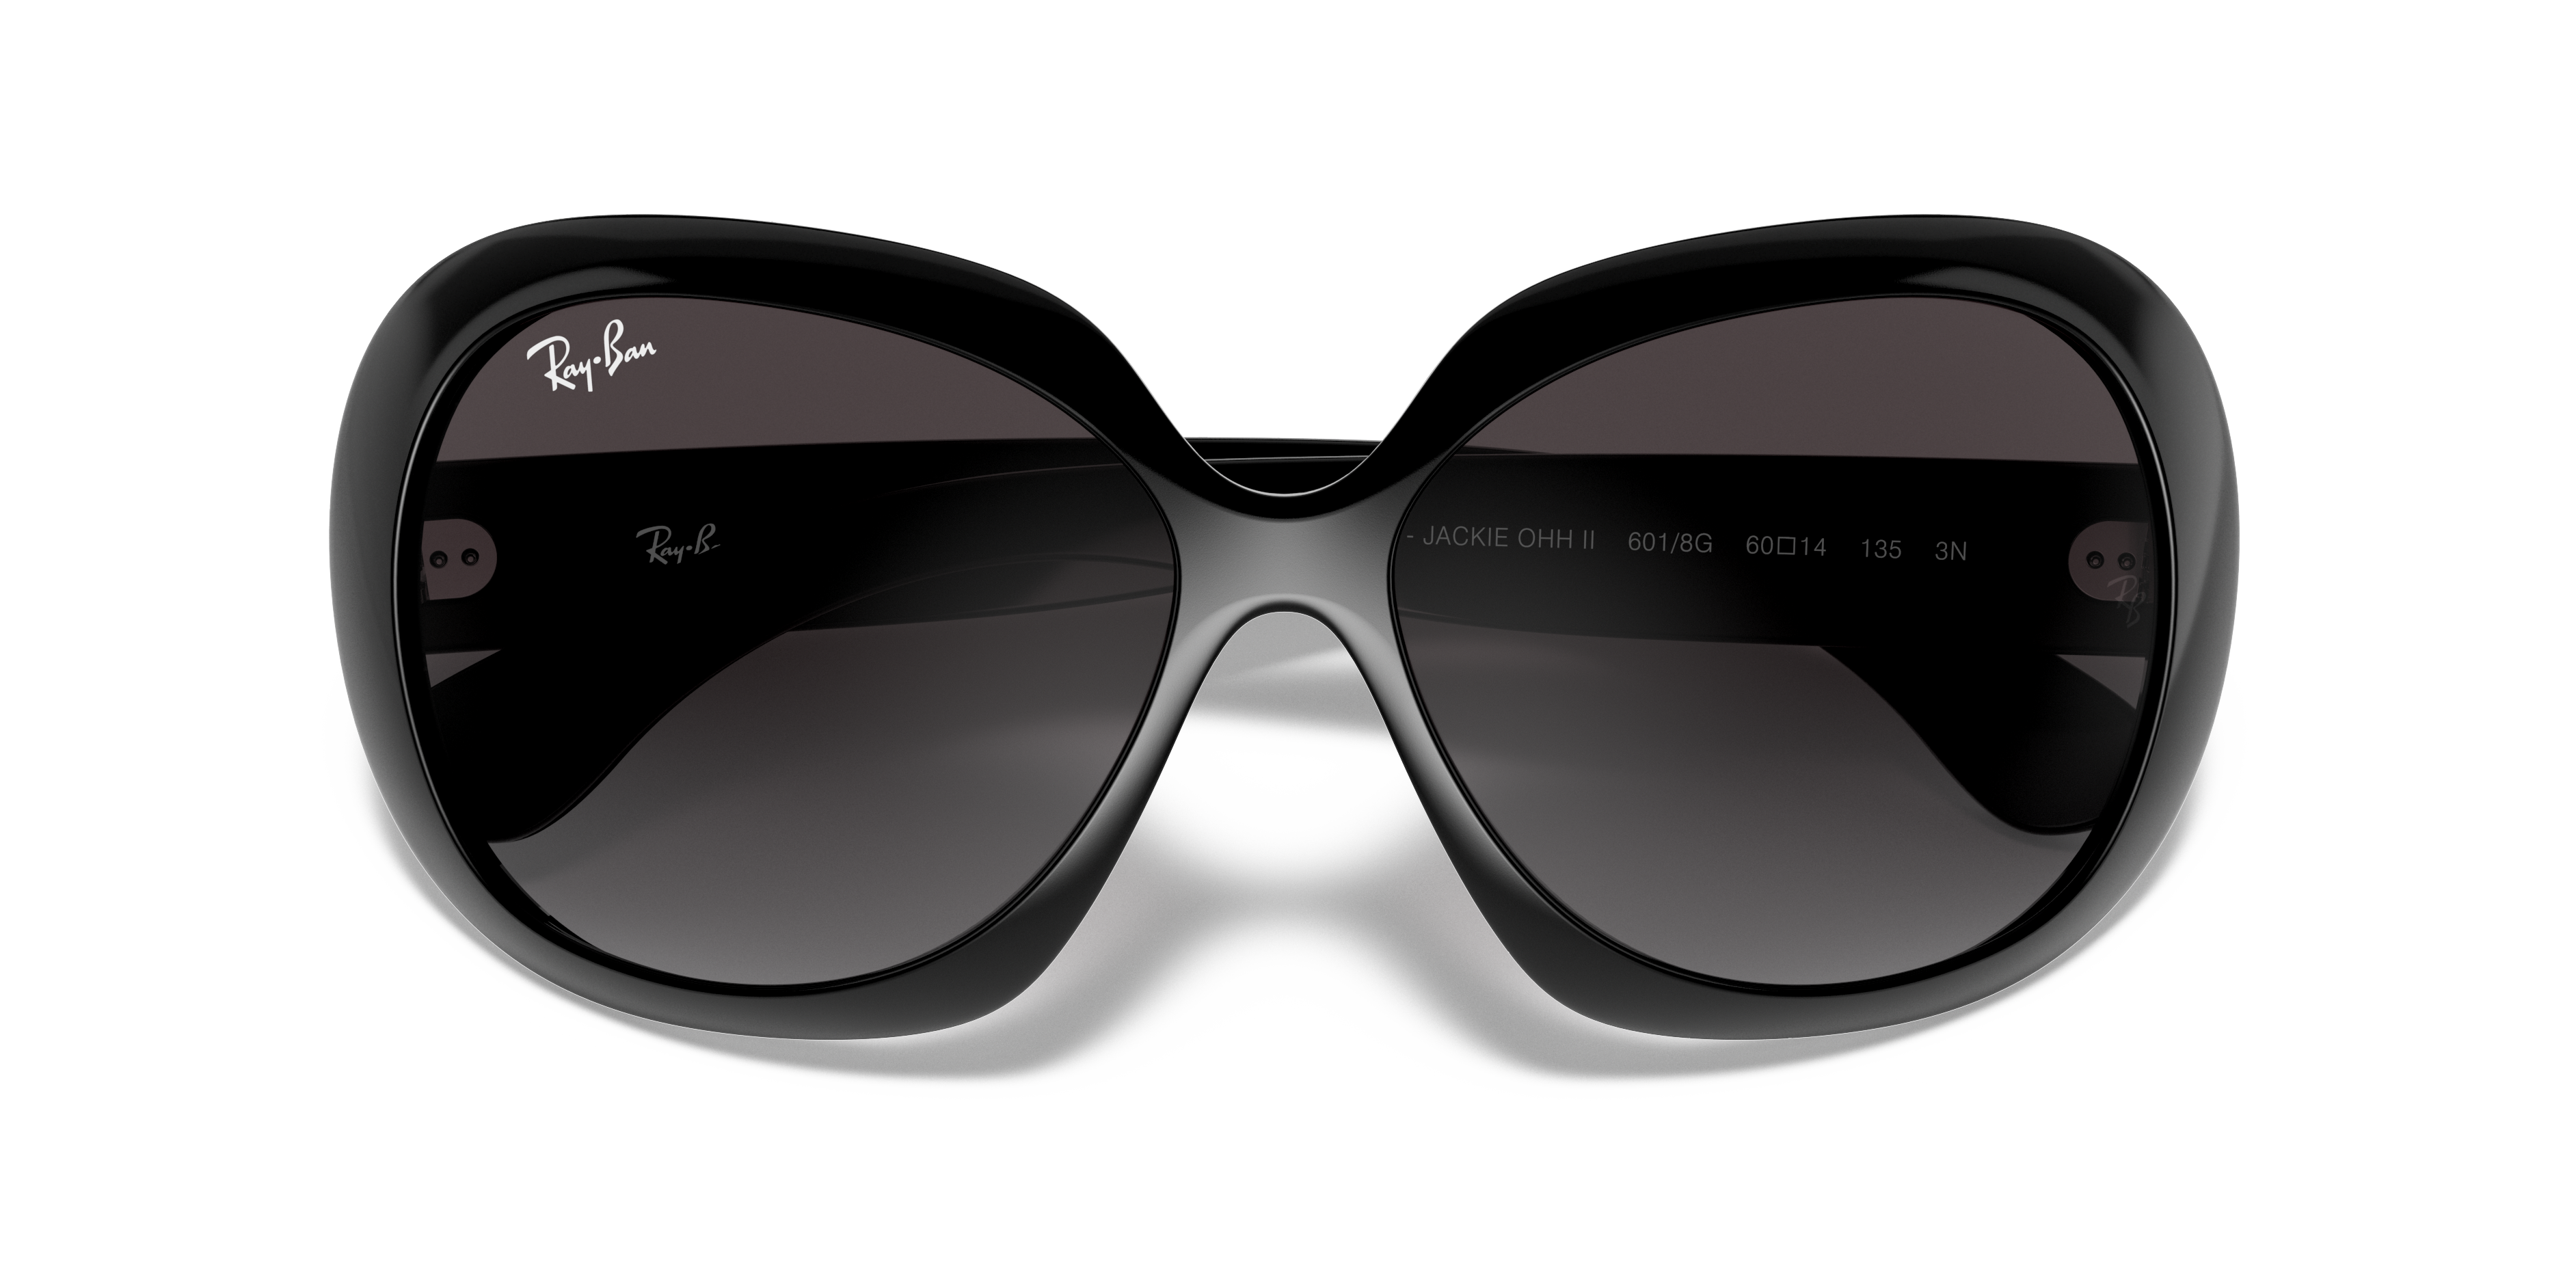 handgemaakt in Italië vrouw zonnebril zwarte frame zonnebril huwelijksgeschenk NOS Ray Ban zonnebril Accessoires Zonnebrillen & Eyewear Zonnebrillen Mod RB4098 Jackie oh II 